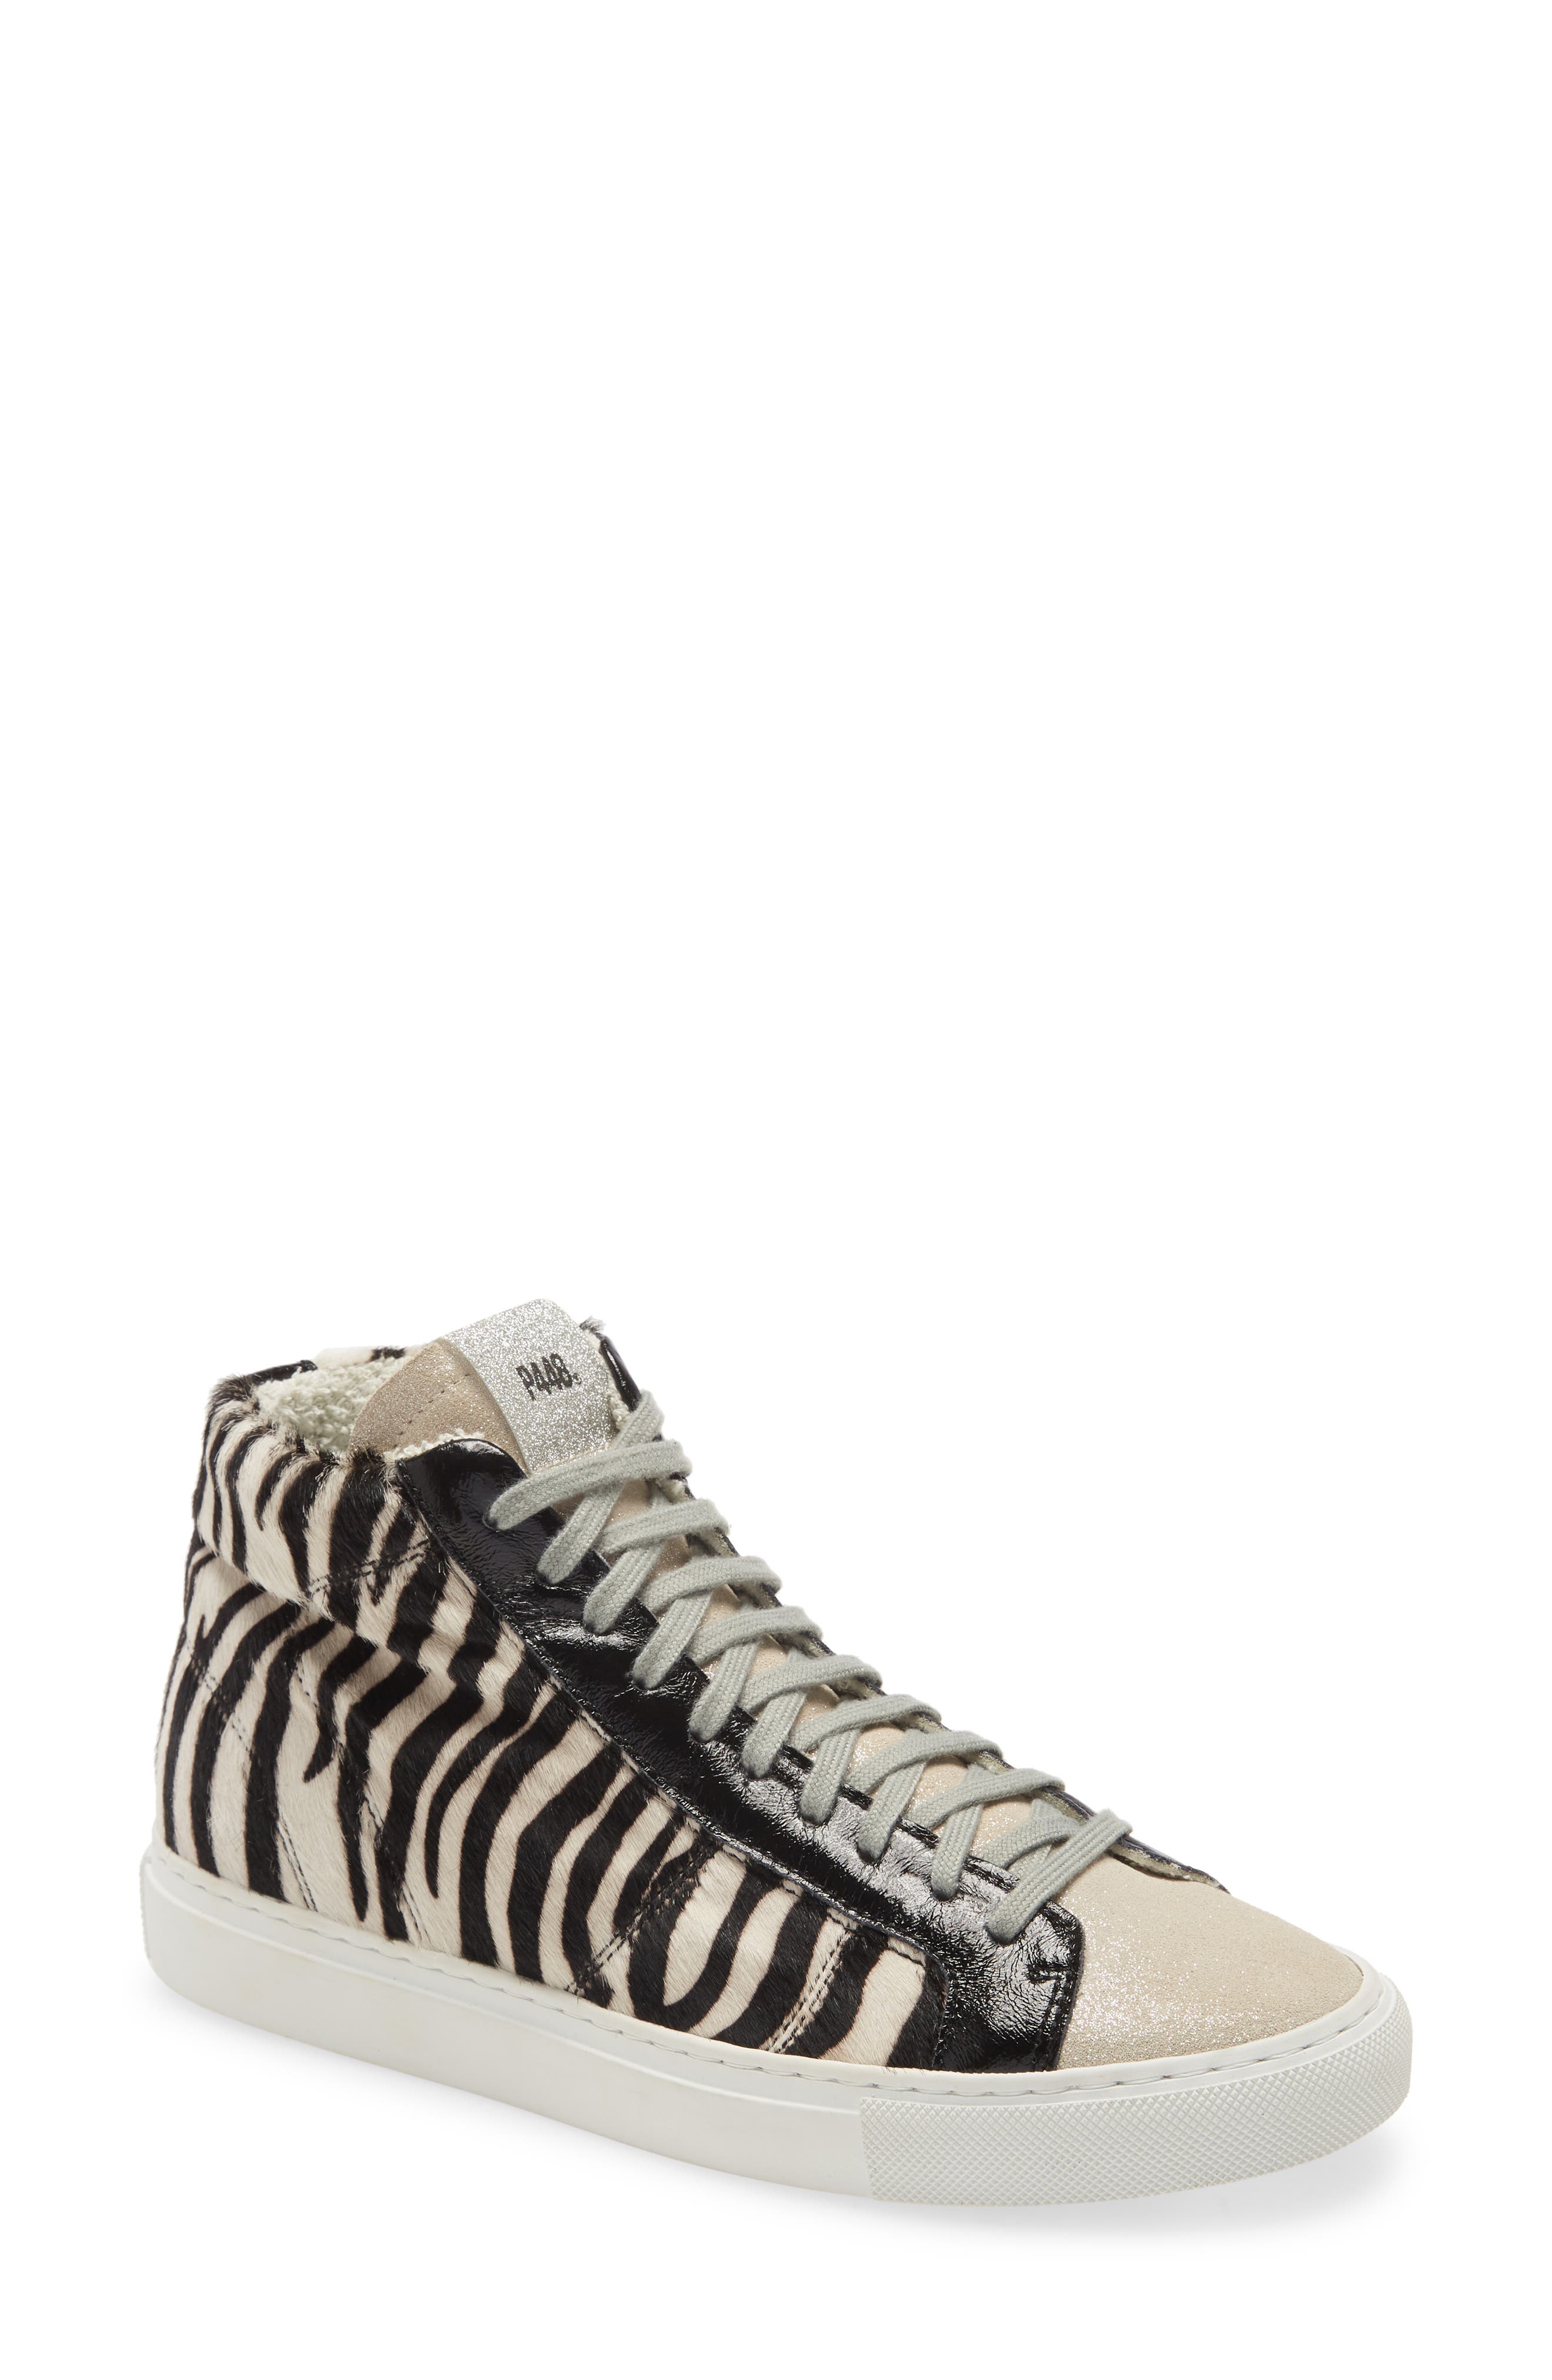 P448 | Star Zebra High Top Sneaker 